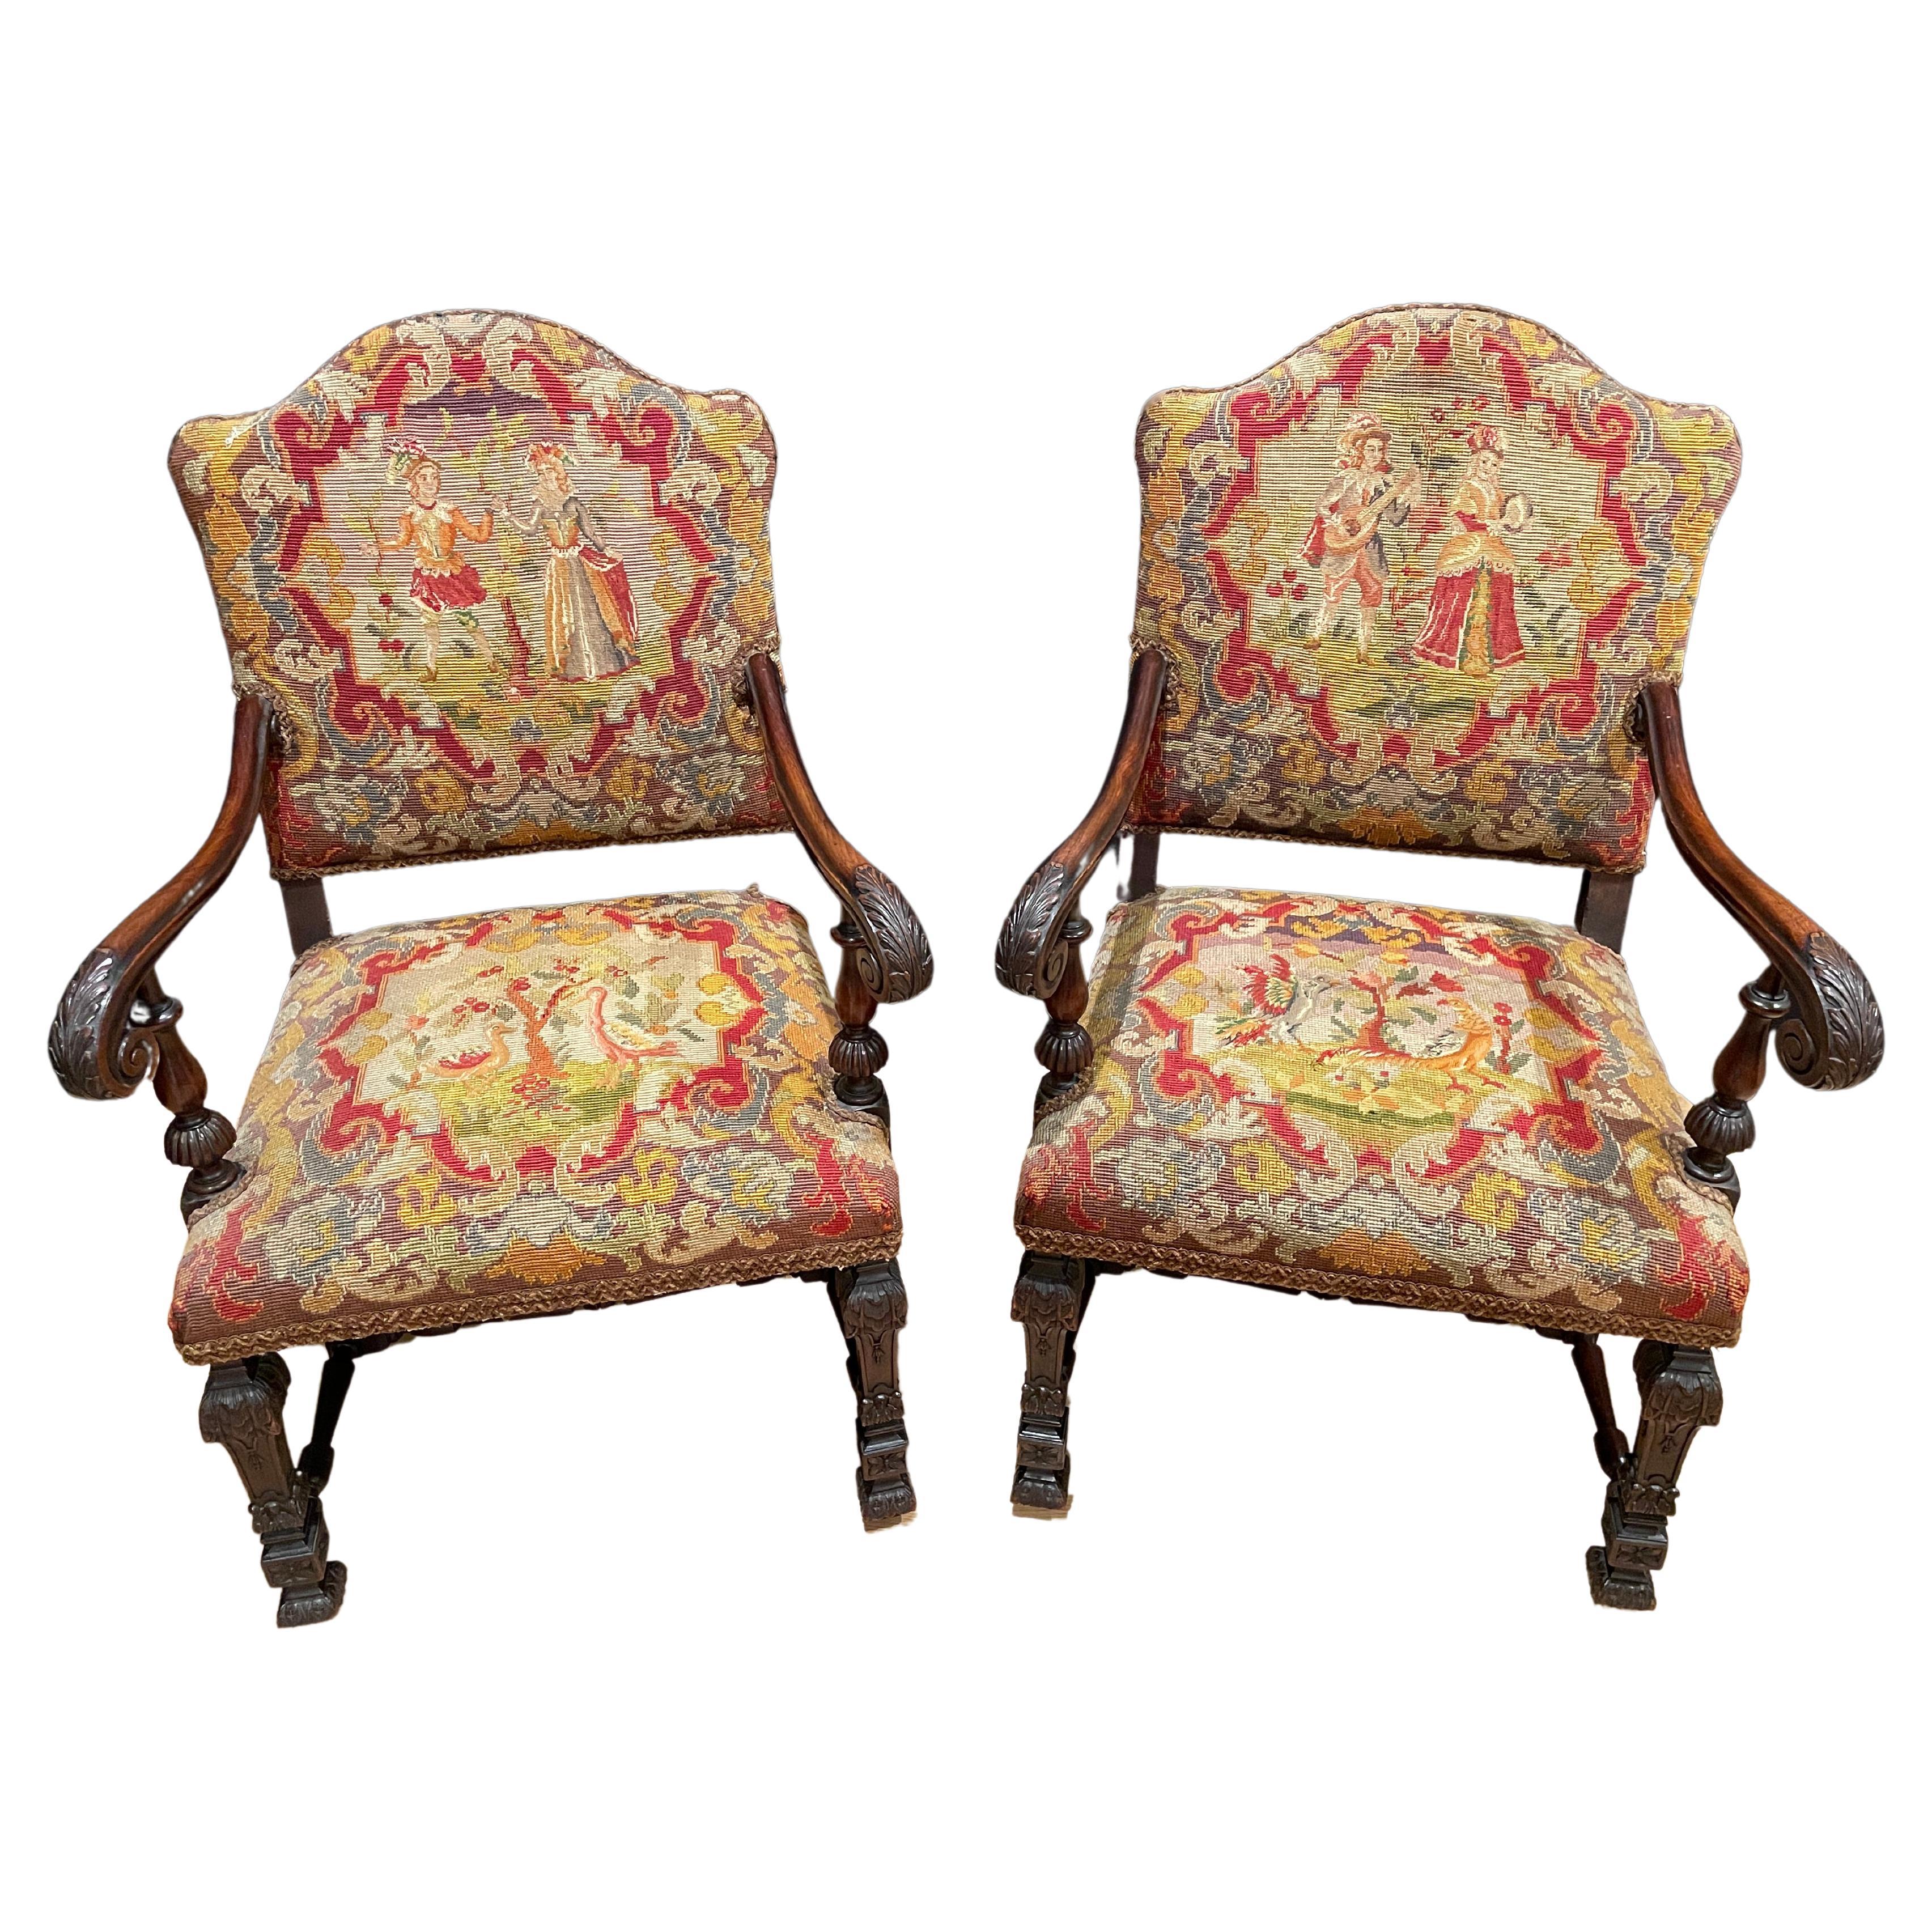 Pair of Renaissance Revival Petit Point Arm Chairs